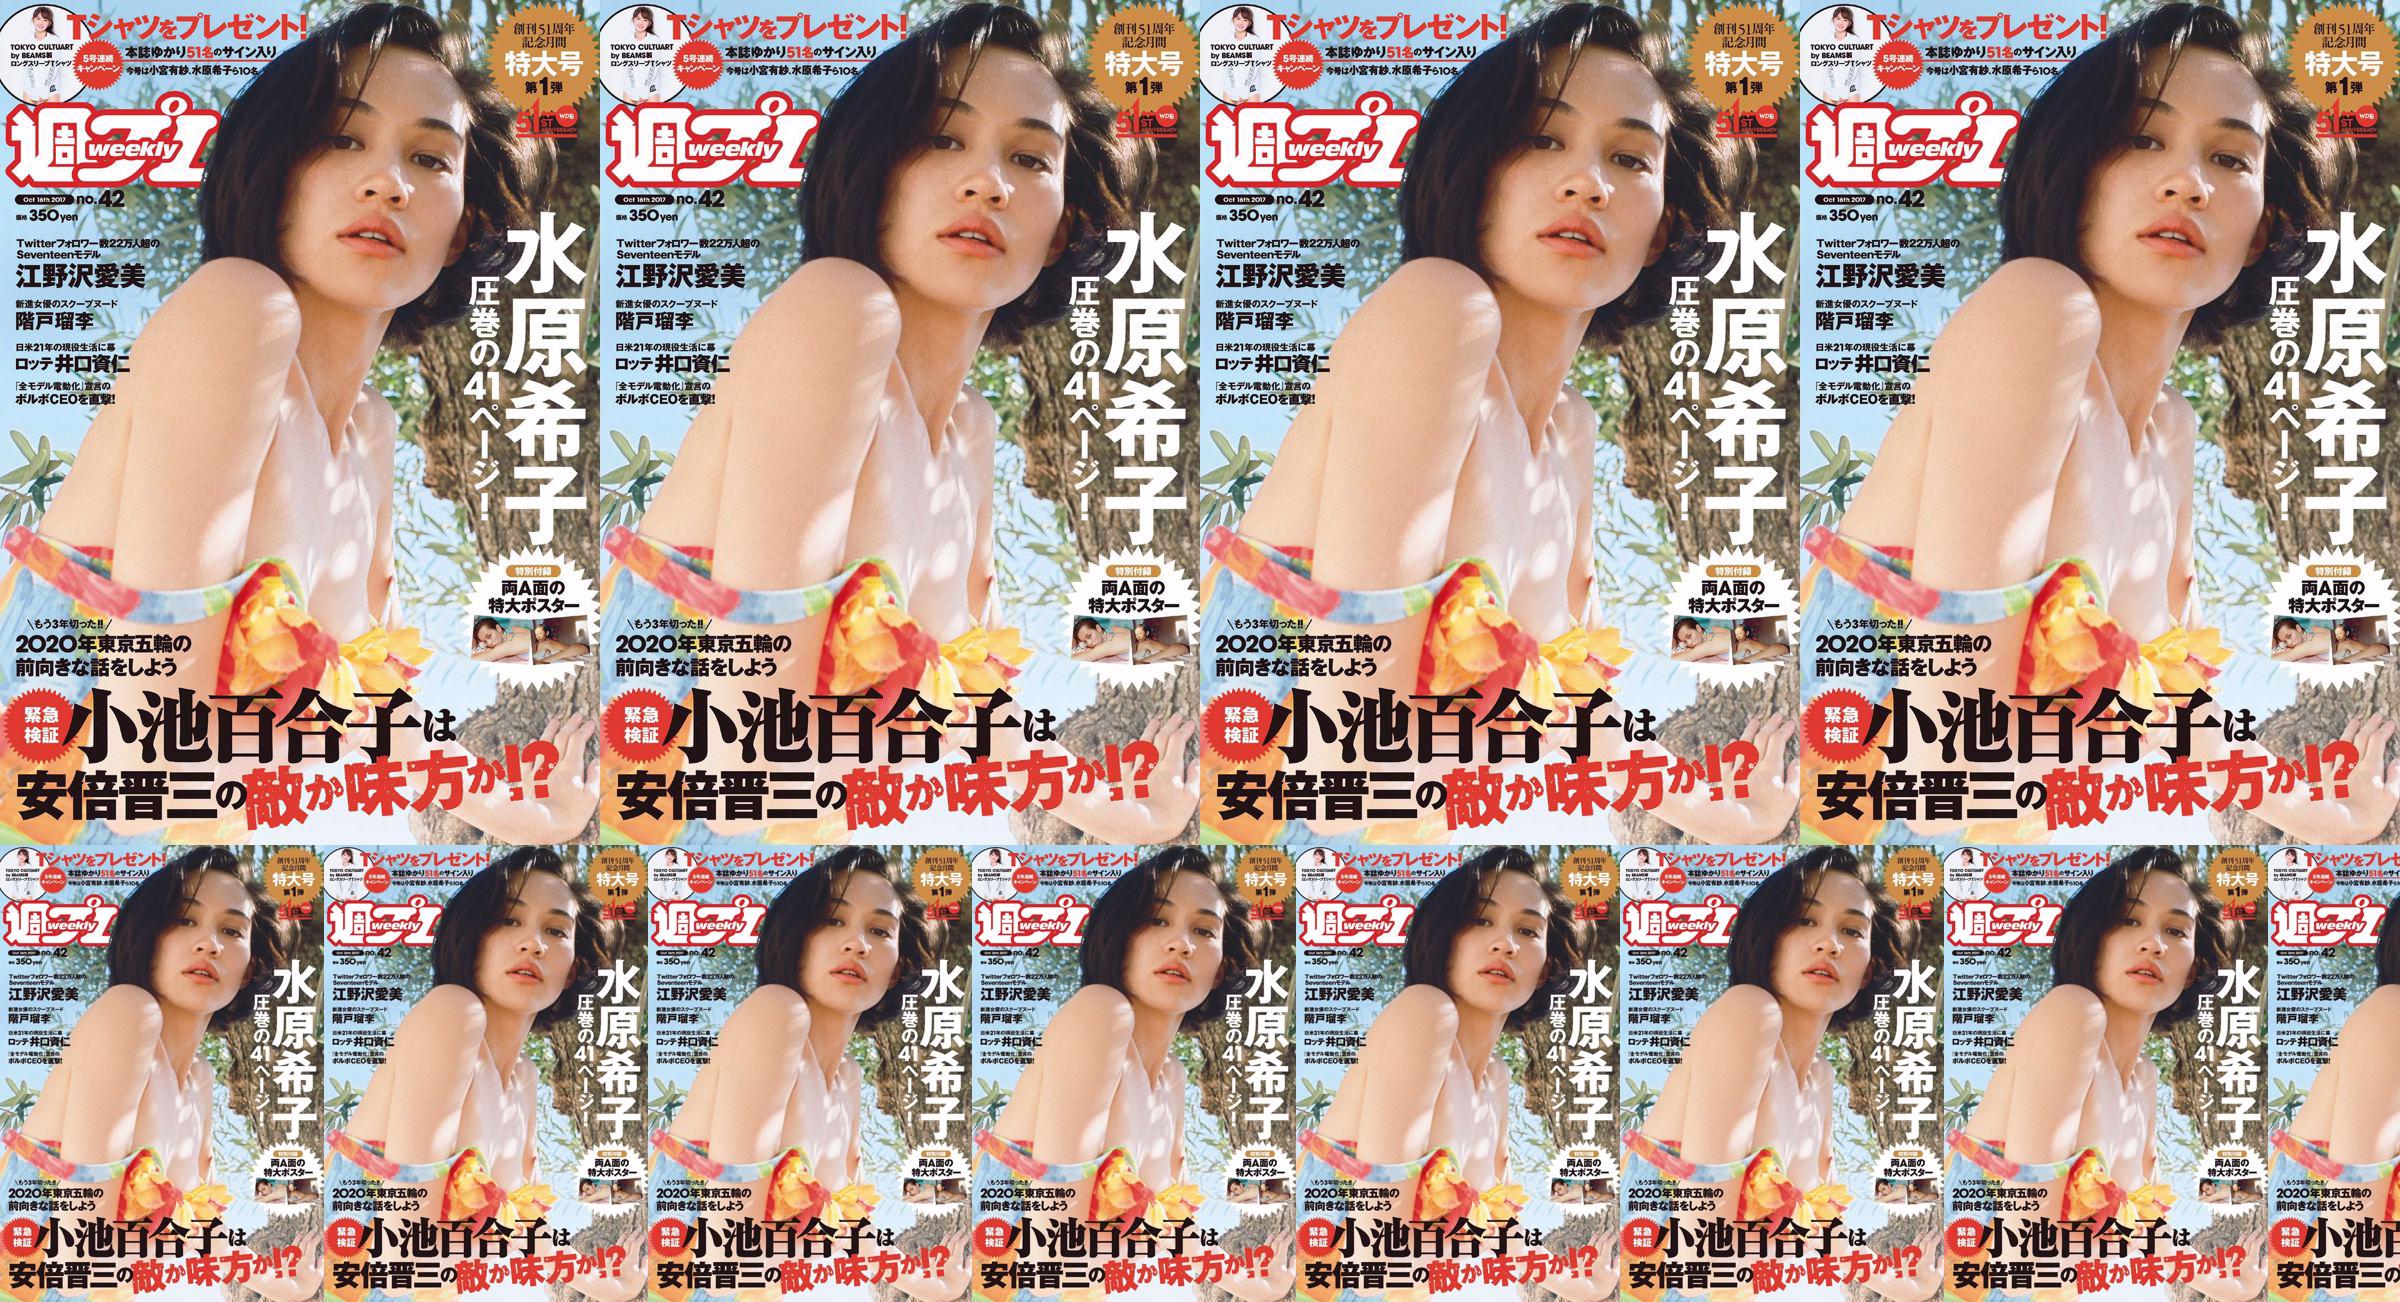 Kiko Mizuhara Manami Enosawa Serina Fukui Miu Nakamura Ruri Shinato [Weekly Playboy] 2017 No.42 Photo Magazine No.7aab4f Pagina 1